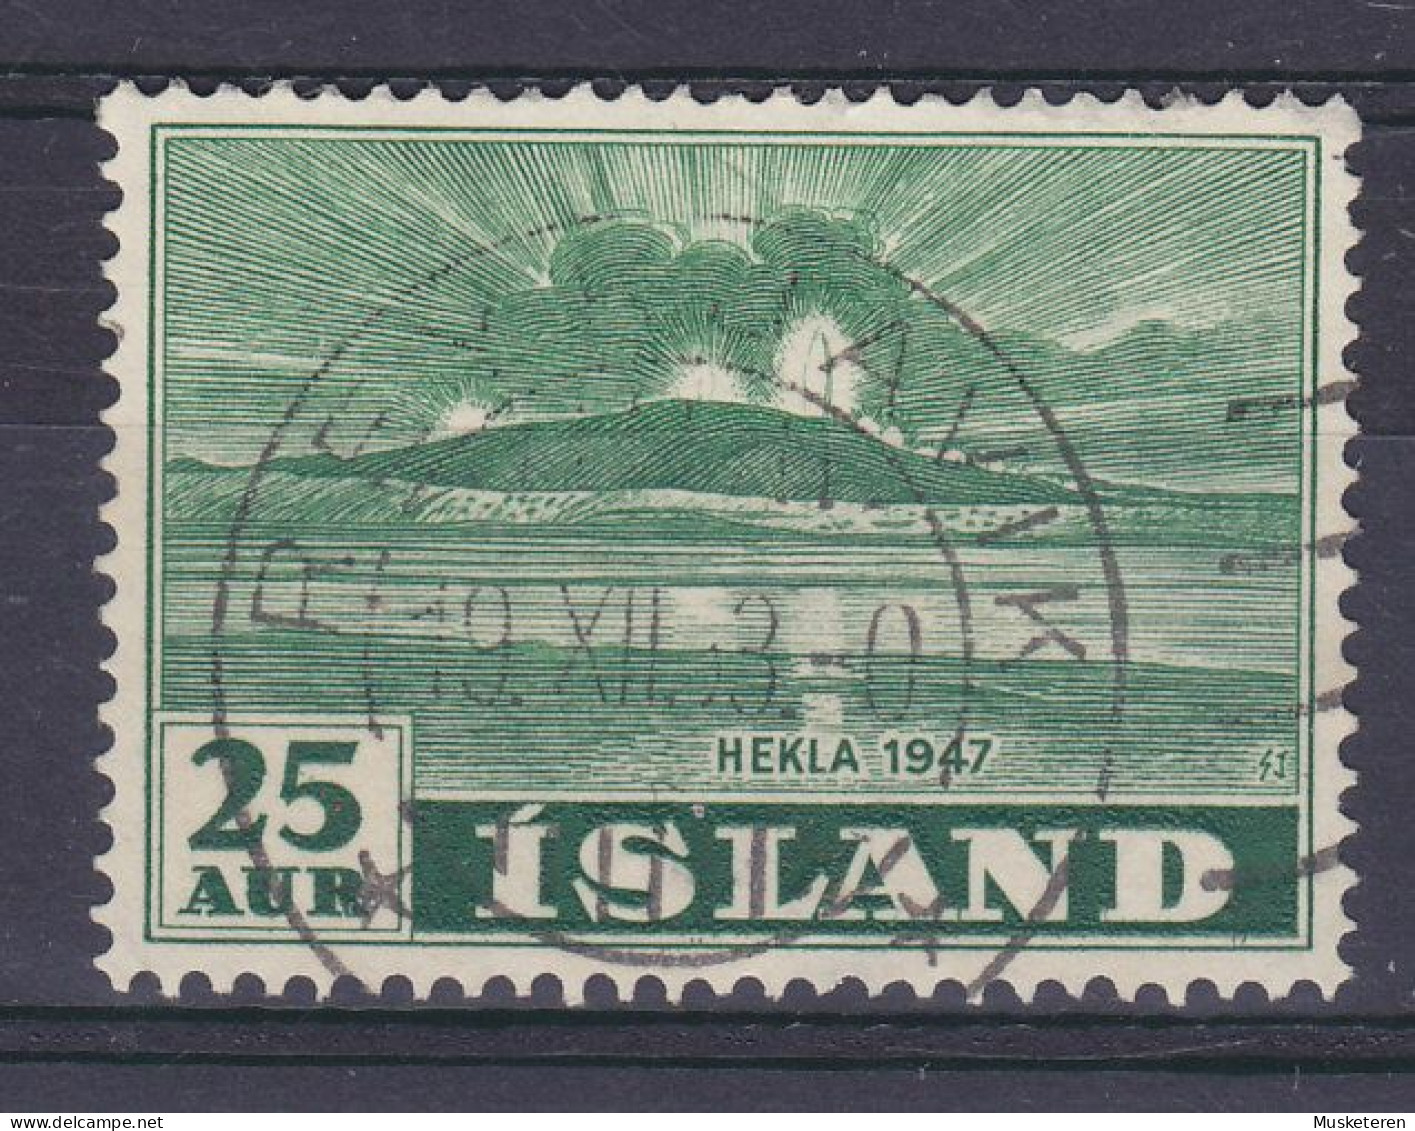 Iceland 1948 Mi. 248, 25 Aur Vulkan Vom Meer Aus Gesehen Deluxe REYKJAVIK Cancel !! - Gebruikt